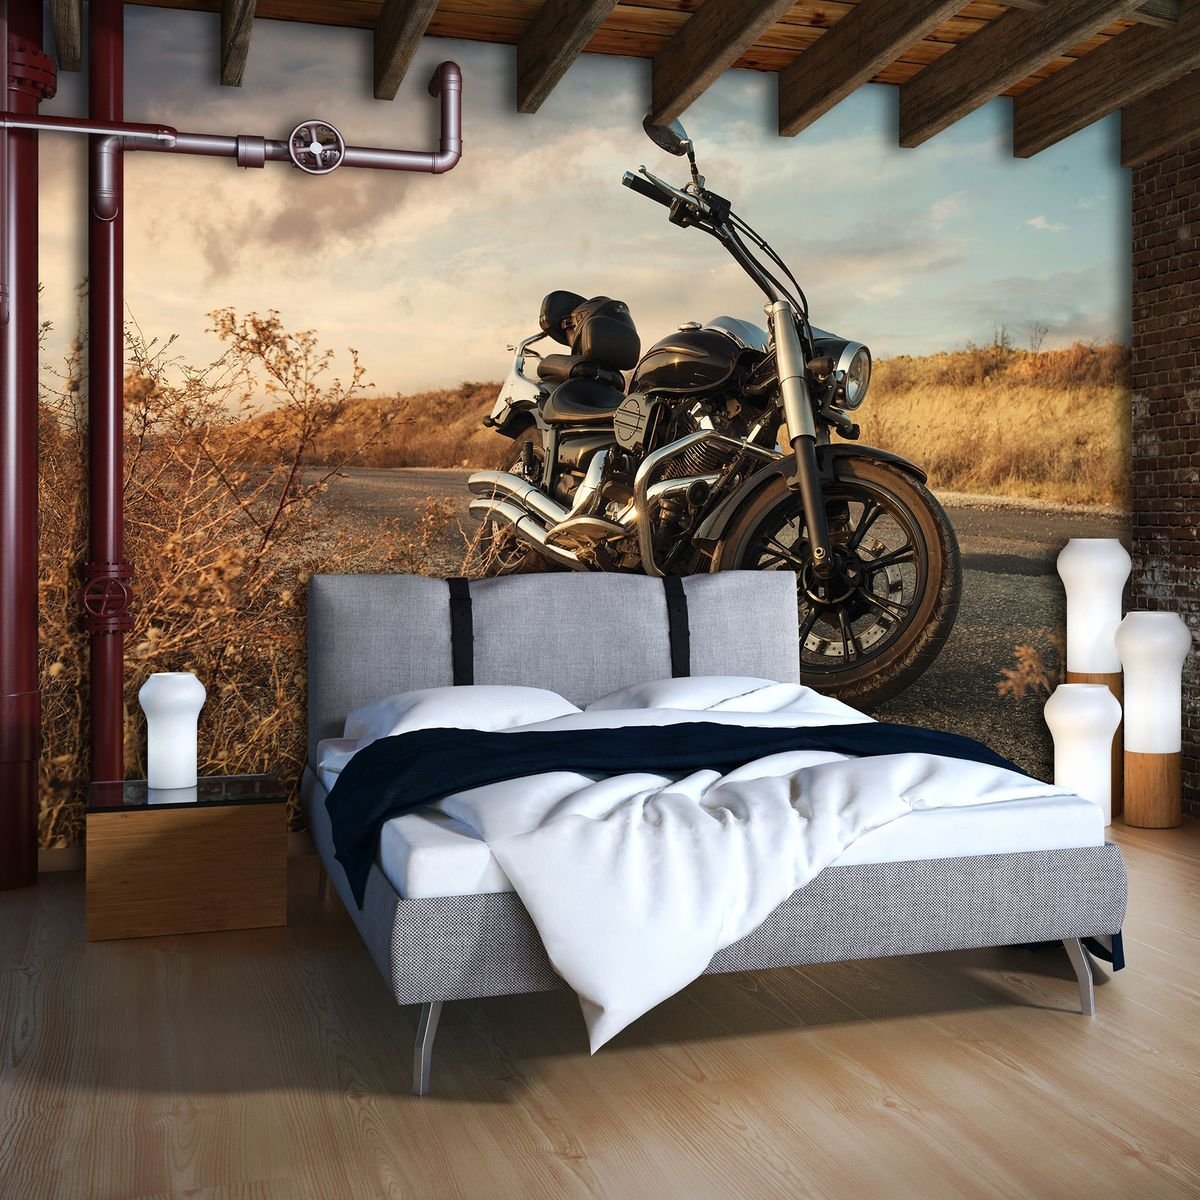 Мотоцикл в комнате